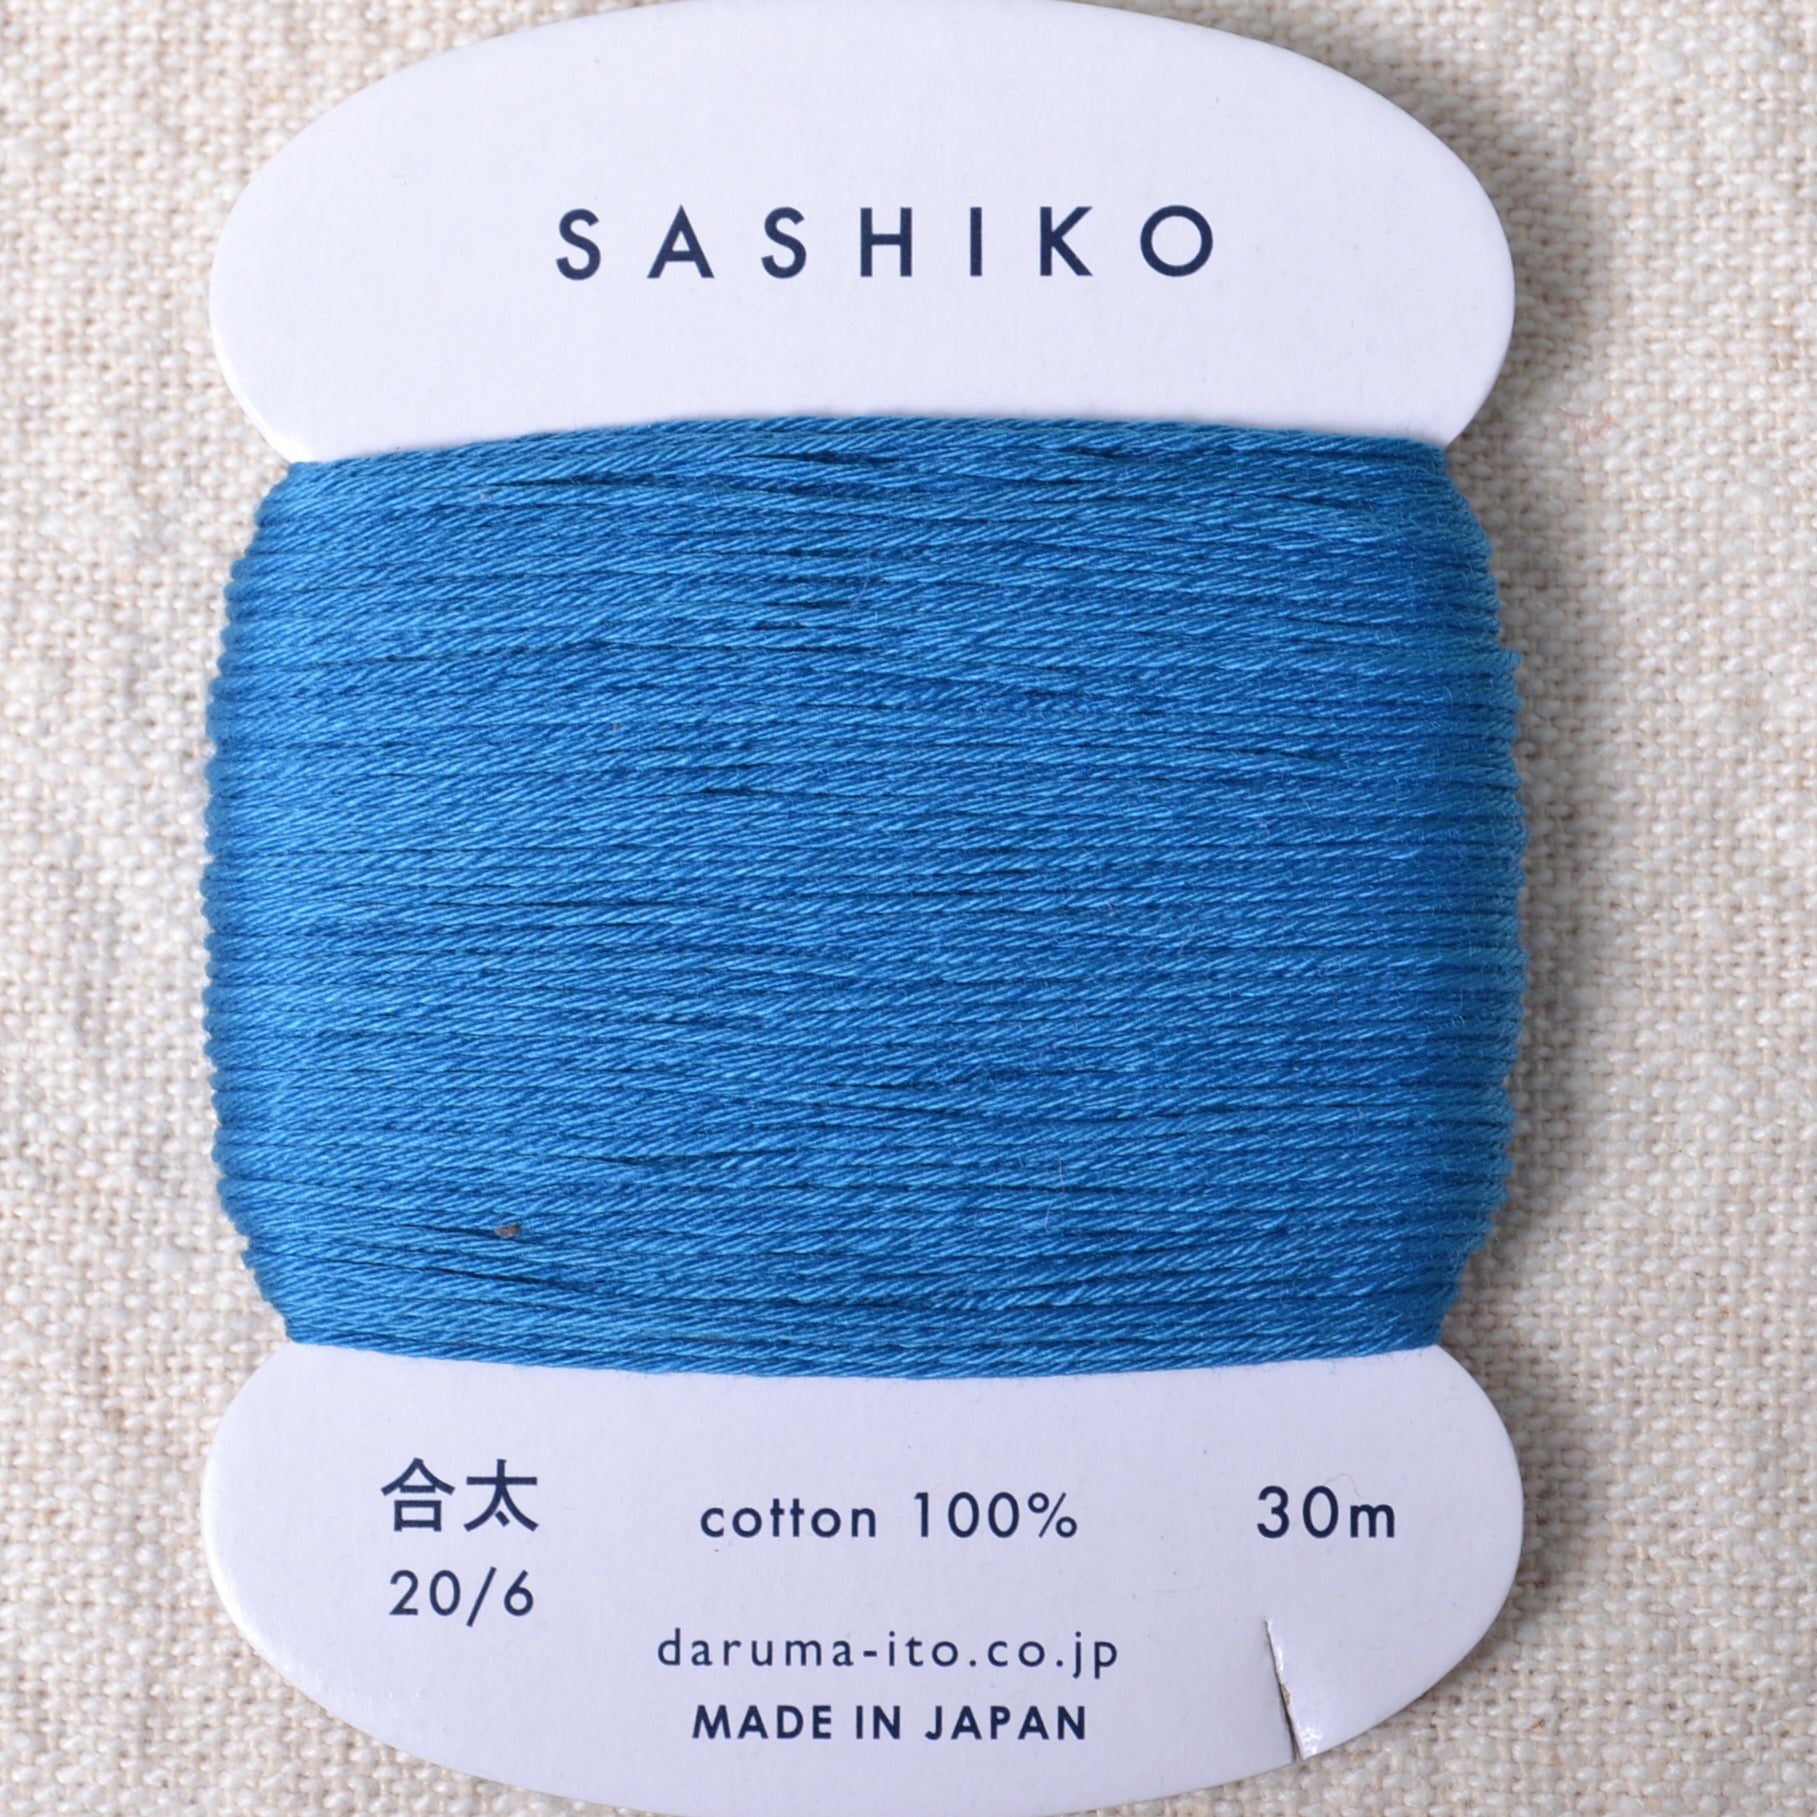 Daruma Sashiko Cloth